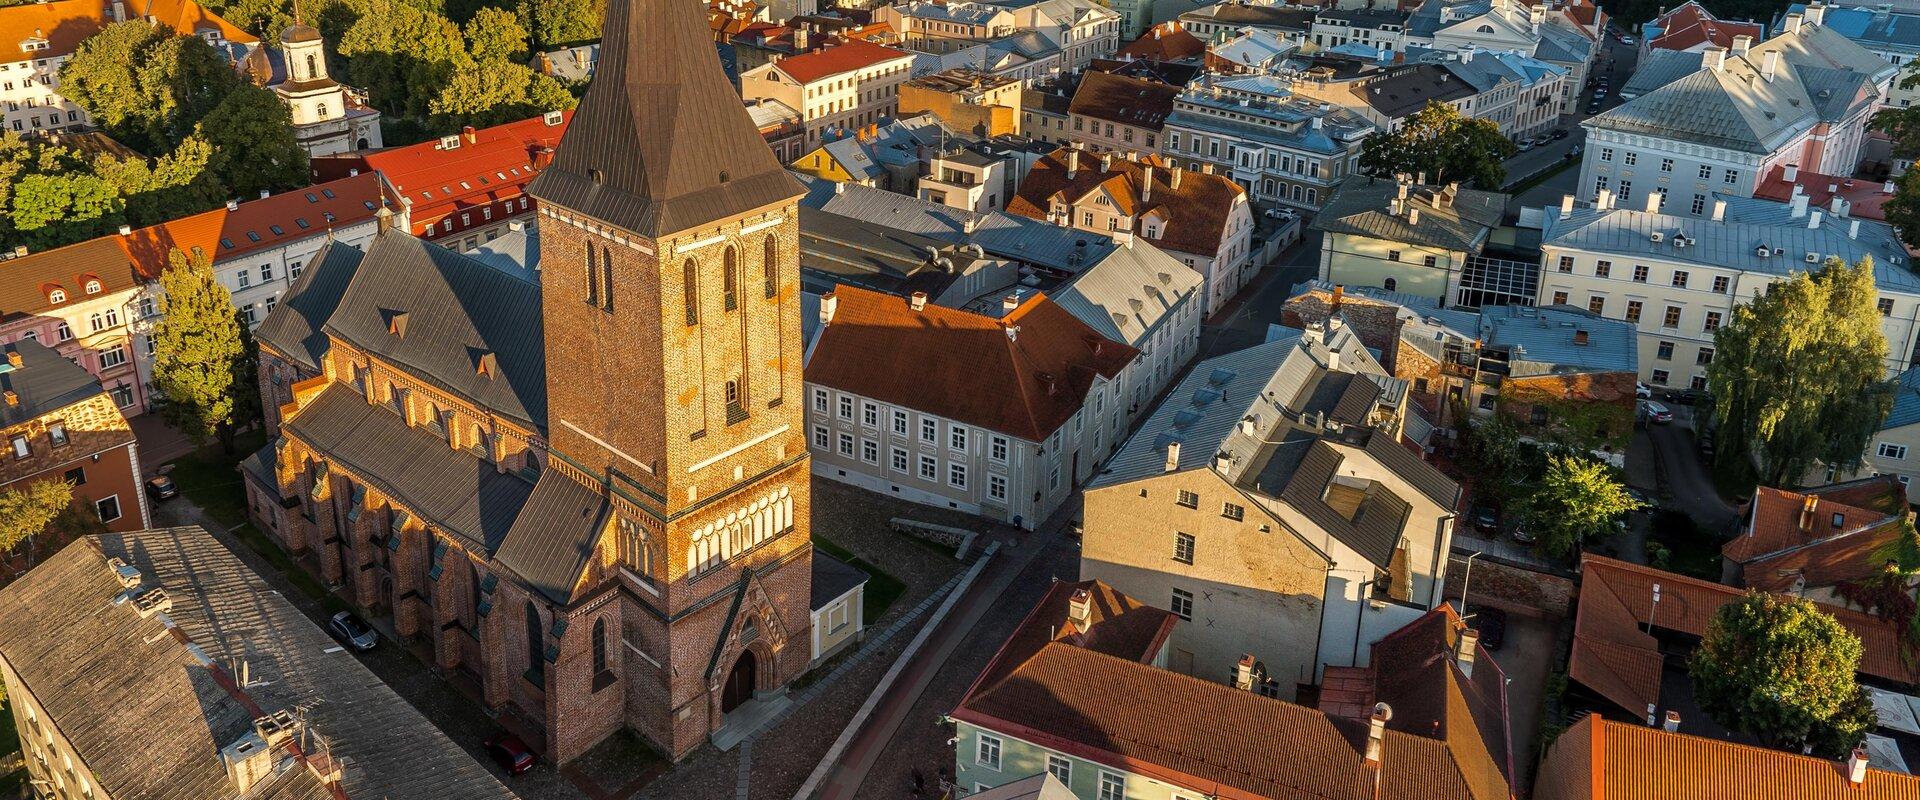 Die im gotischen Stil erbaute Tartuer Johanniskirche stammt aus dem 14. Jahrhundert und ist daher eine der ältesten Kirchen in Estland. Wegen den viel